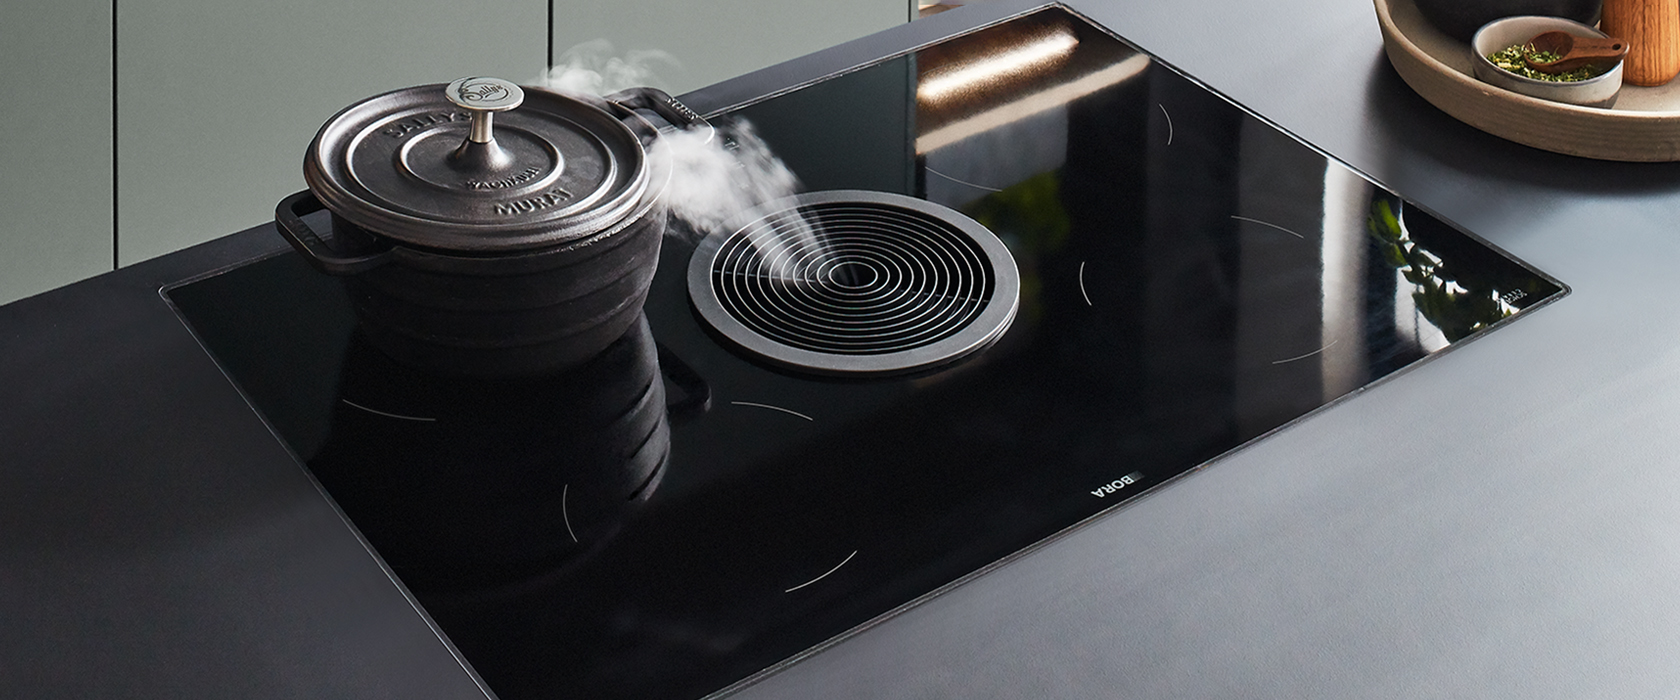 Strakke, moderne inductiekookplaat met een actieve kookpot, waar stoom uit opstijgt, geplaatst in een eigentijdse keuken met subtiele aardetinten.